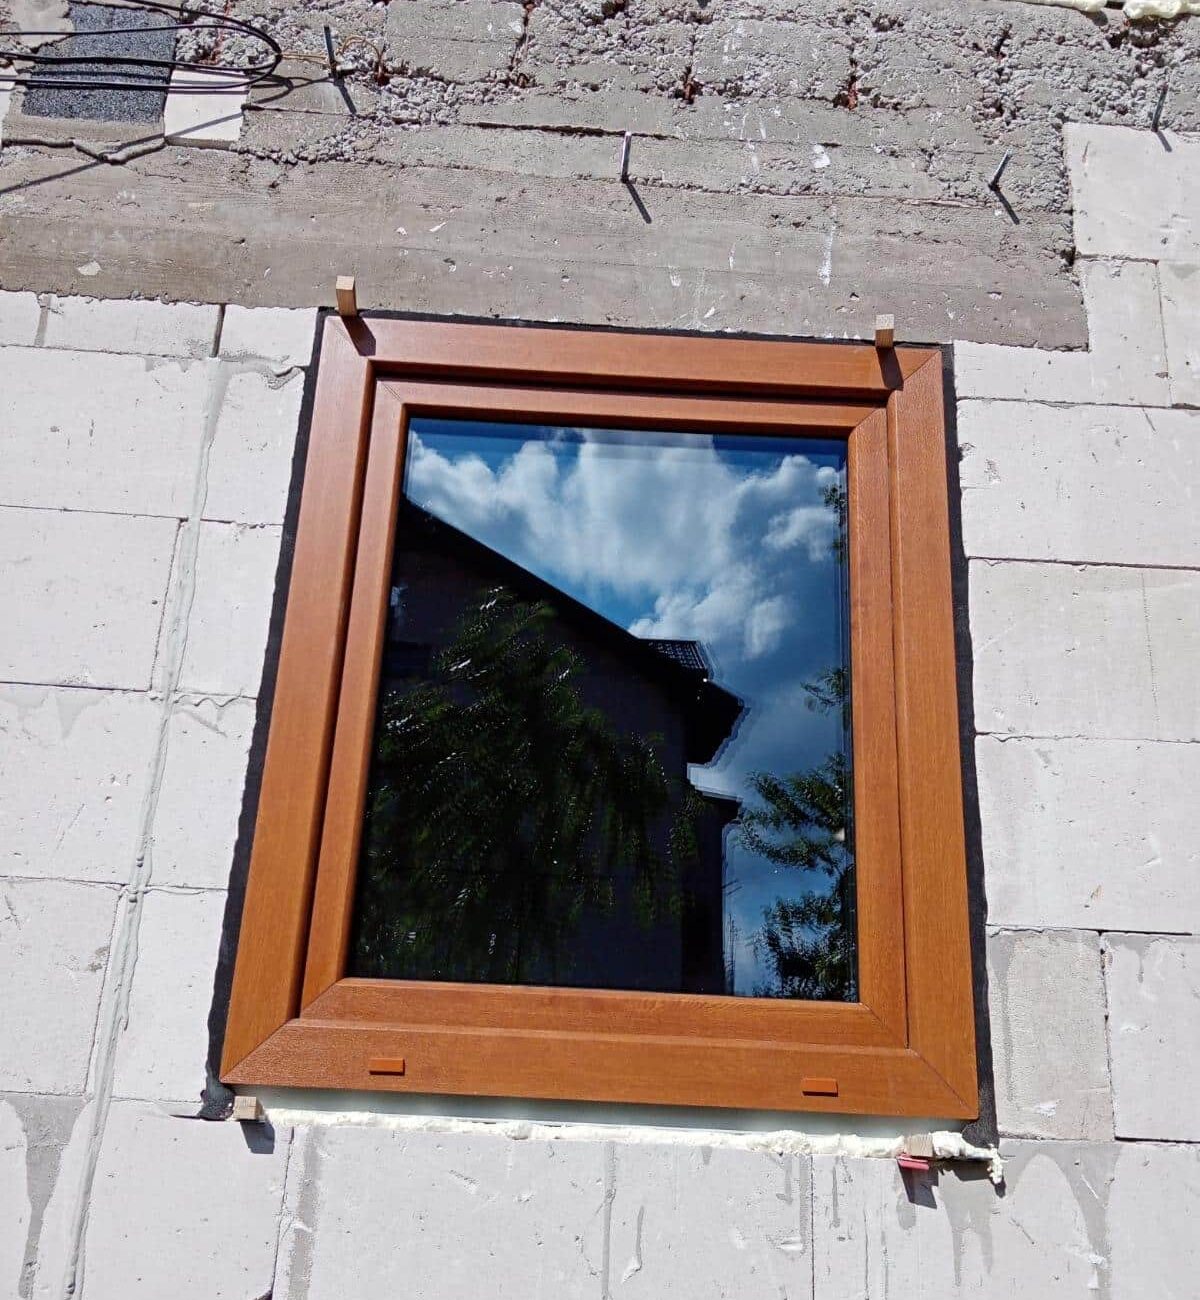 Okno 1-skrzdłowe z montażem na taśmę rozprężną - Zawiercie, montaż okien wykonała firma ONESTO